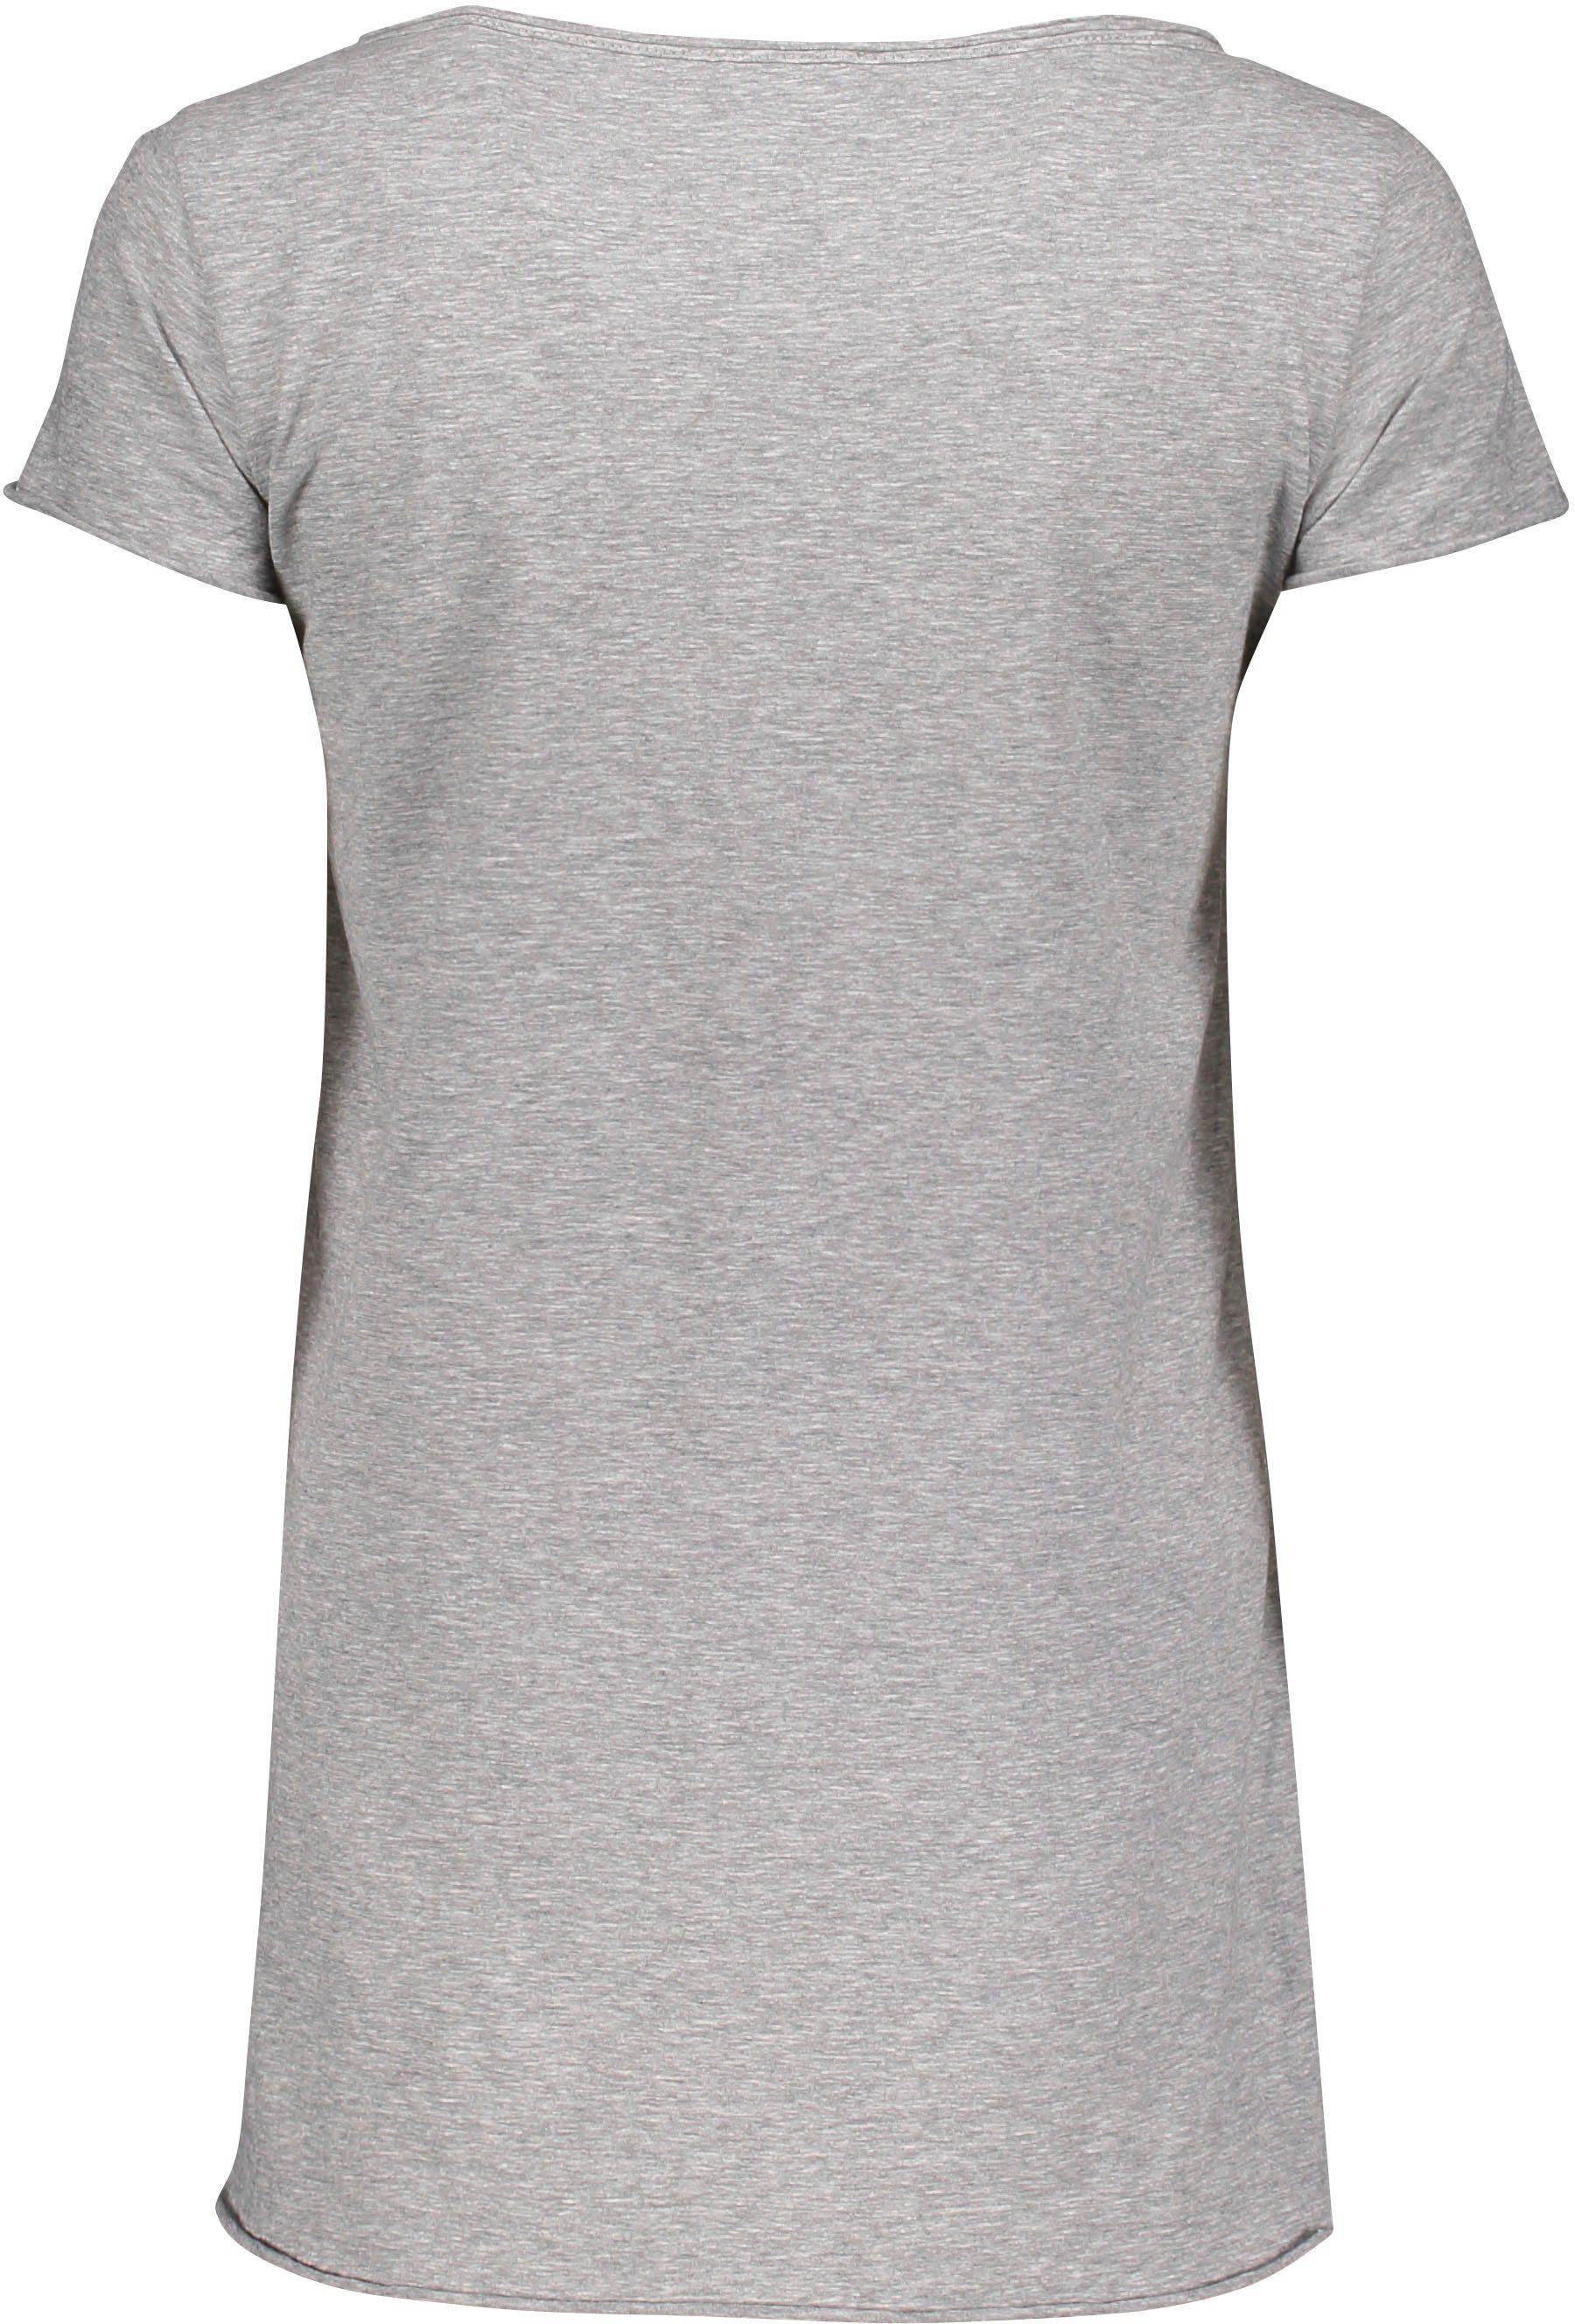 T-Shirt Please mit grigio melange 1907 M00A Saumabschlüssen (grau und Please Jeans meliert) Metal-Label angeschnittenen leicht